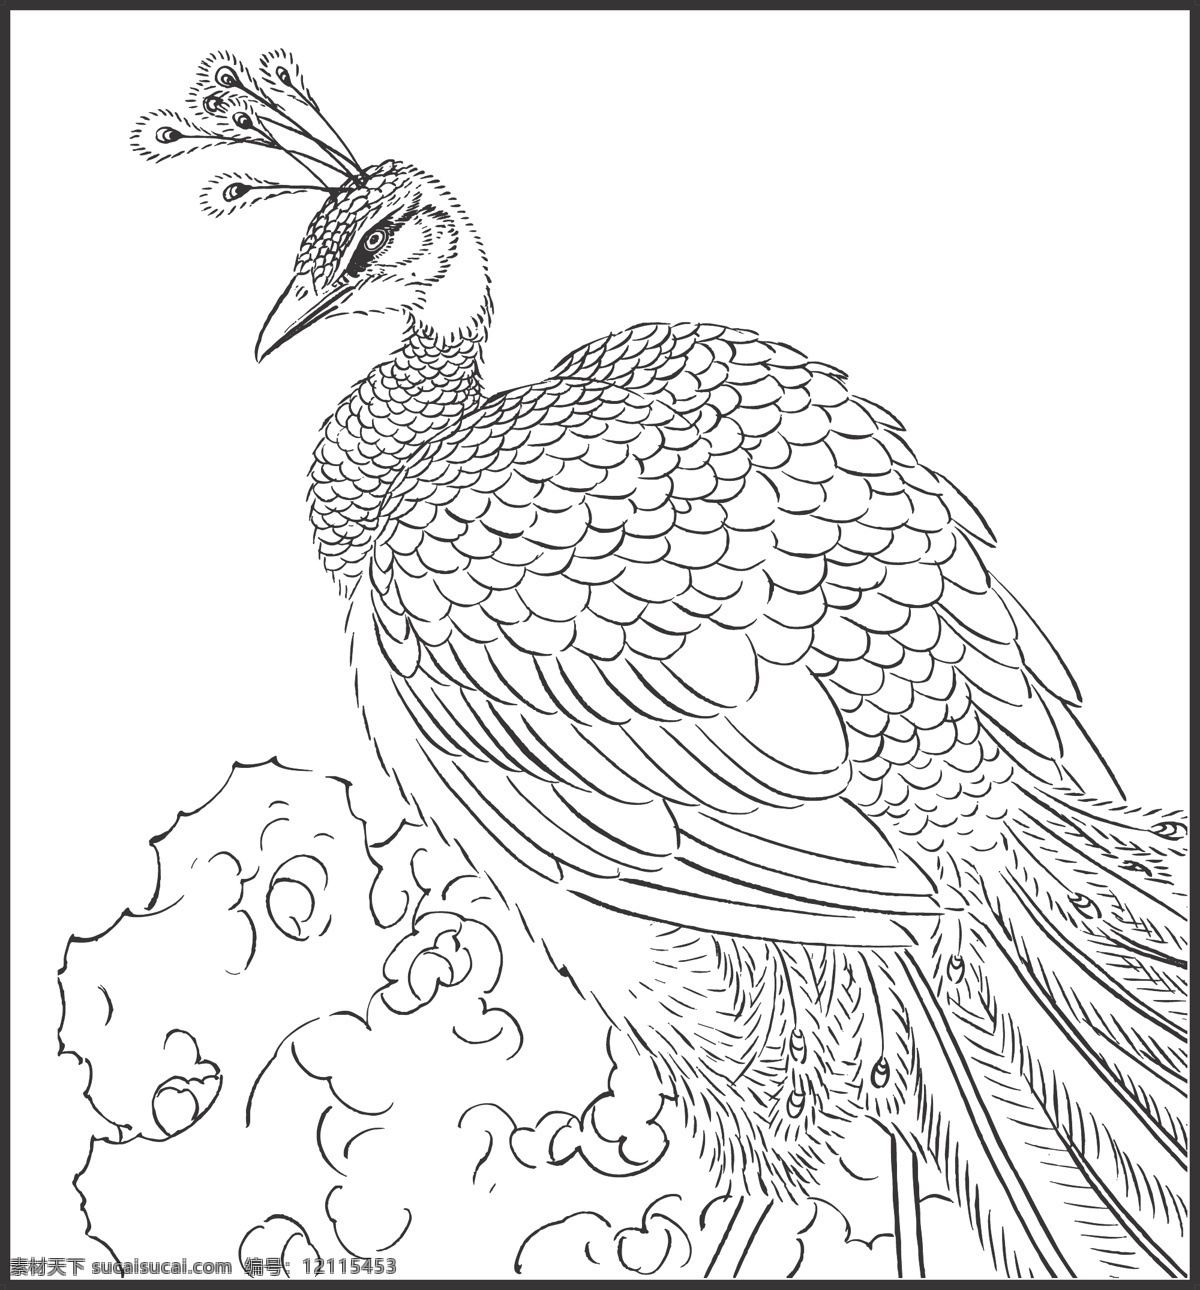 孔雀 百鸟之王 动物 鸟儿 剪纸 线条 矢量 传统 民俗 装饰 插画 白描 生物世界 鸟类